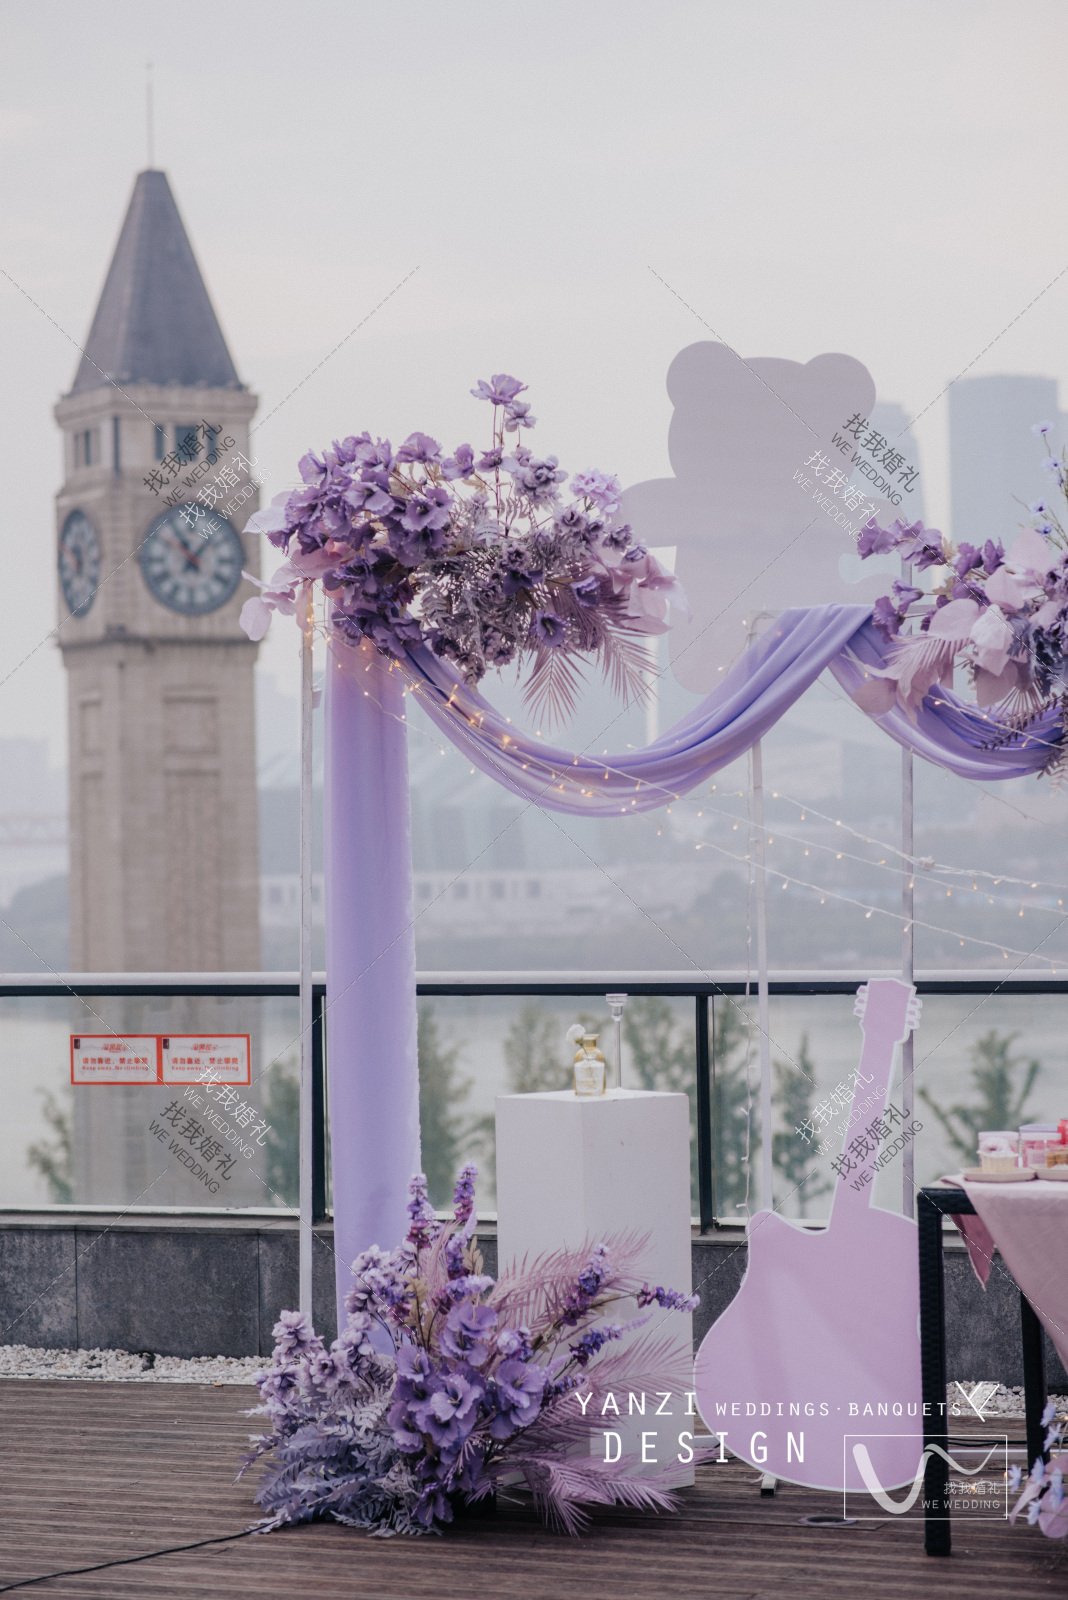 双向奔赴的爱情紫色主题室内主题现场布置图片_效果图_策划价格-找我婚礼